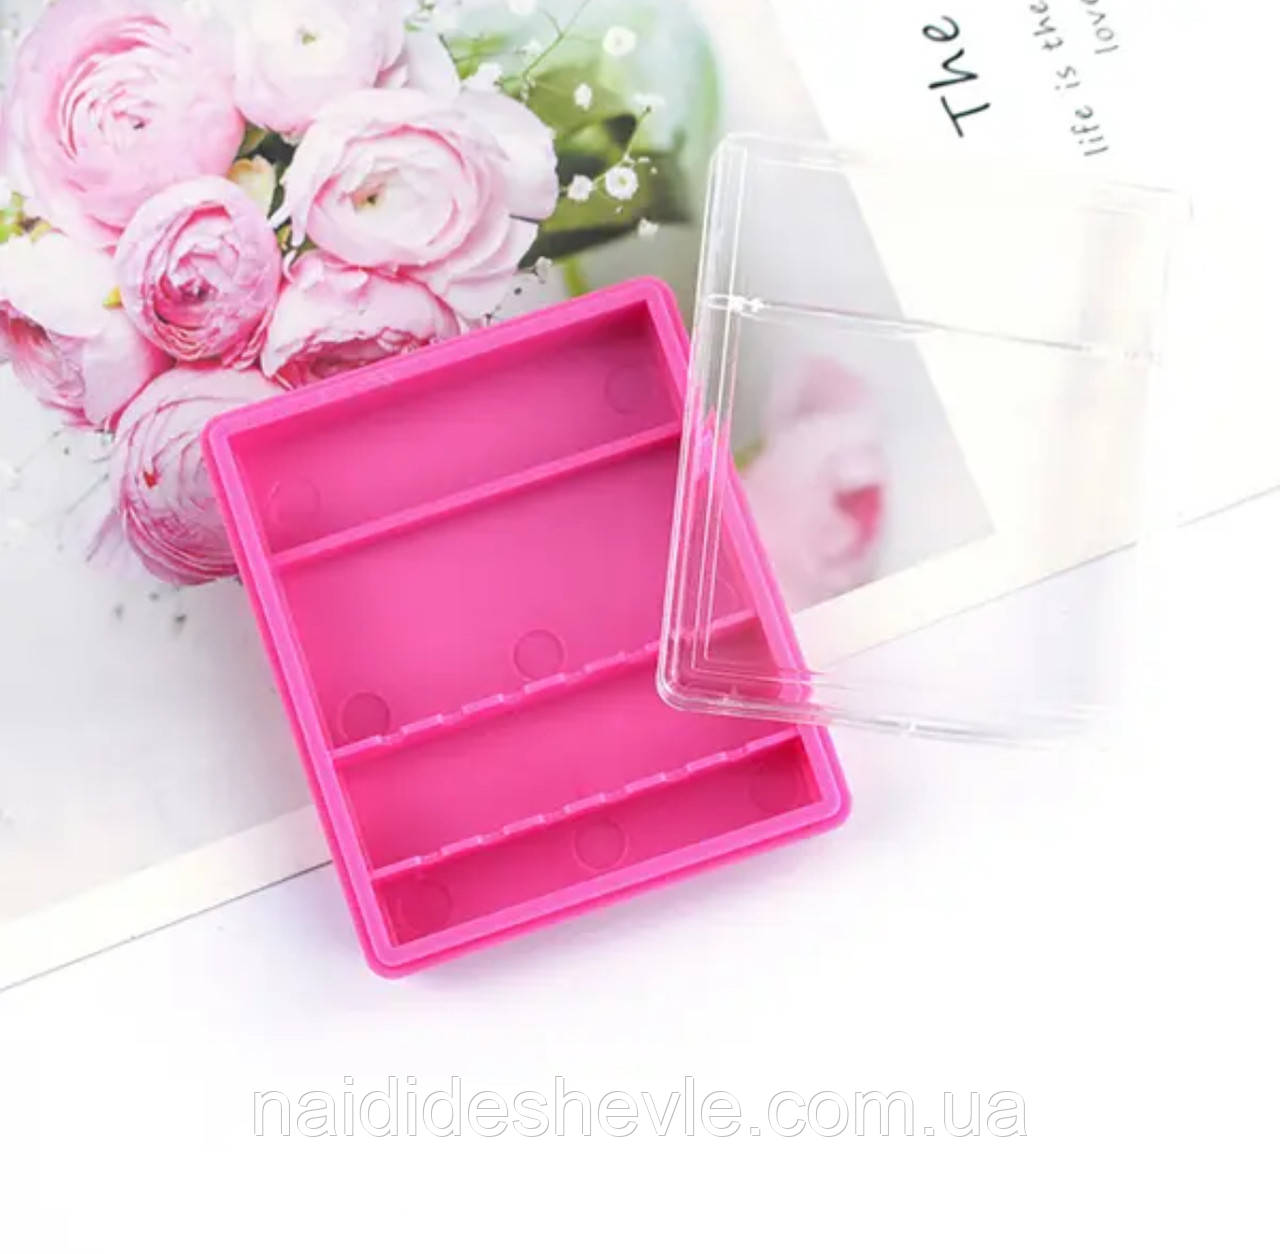 Пластиковий контейнер (органайзер) 6 х 5.5 см. - для зберігання насадок, рожевого кольору